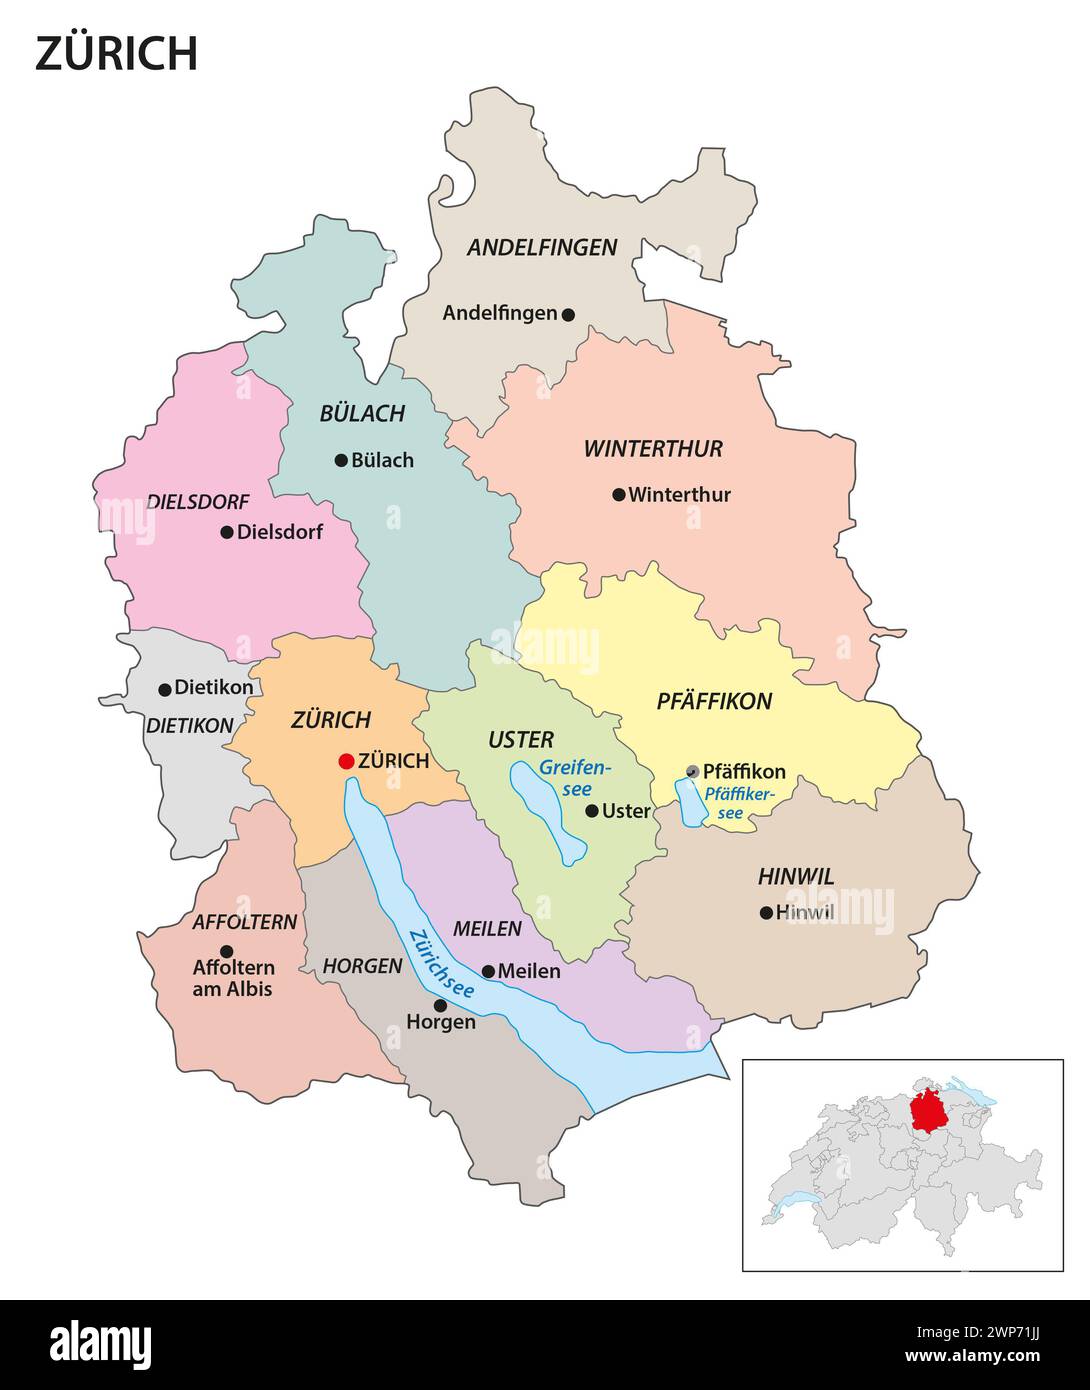 Verwaltungsbezirkskarte des Kantons Zürich, Schweiz Stockfoto